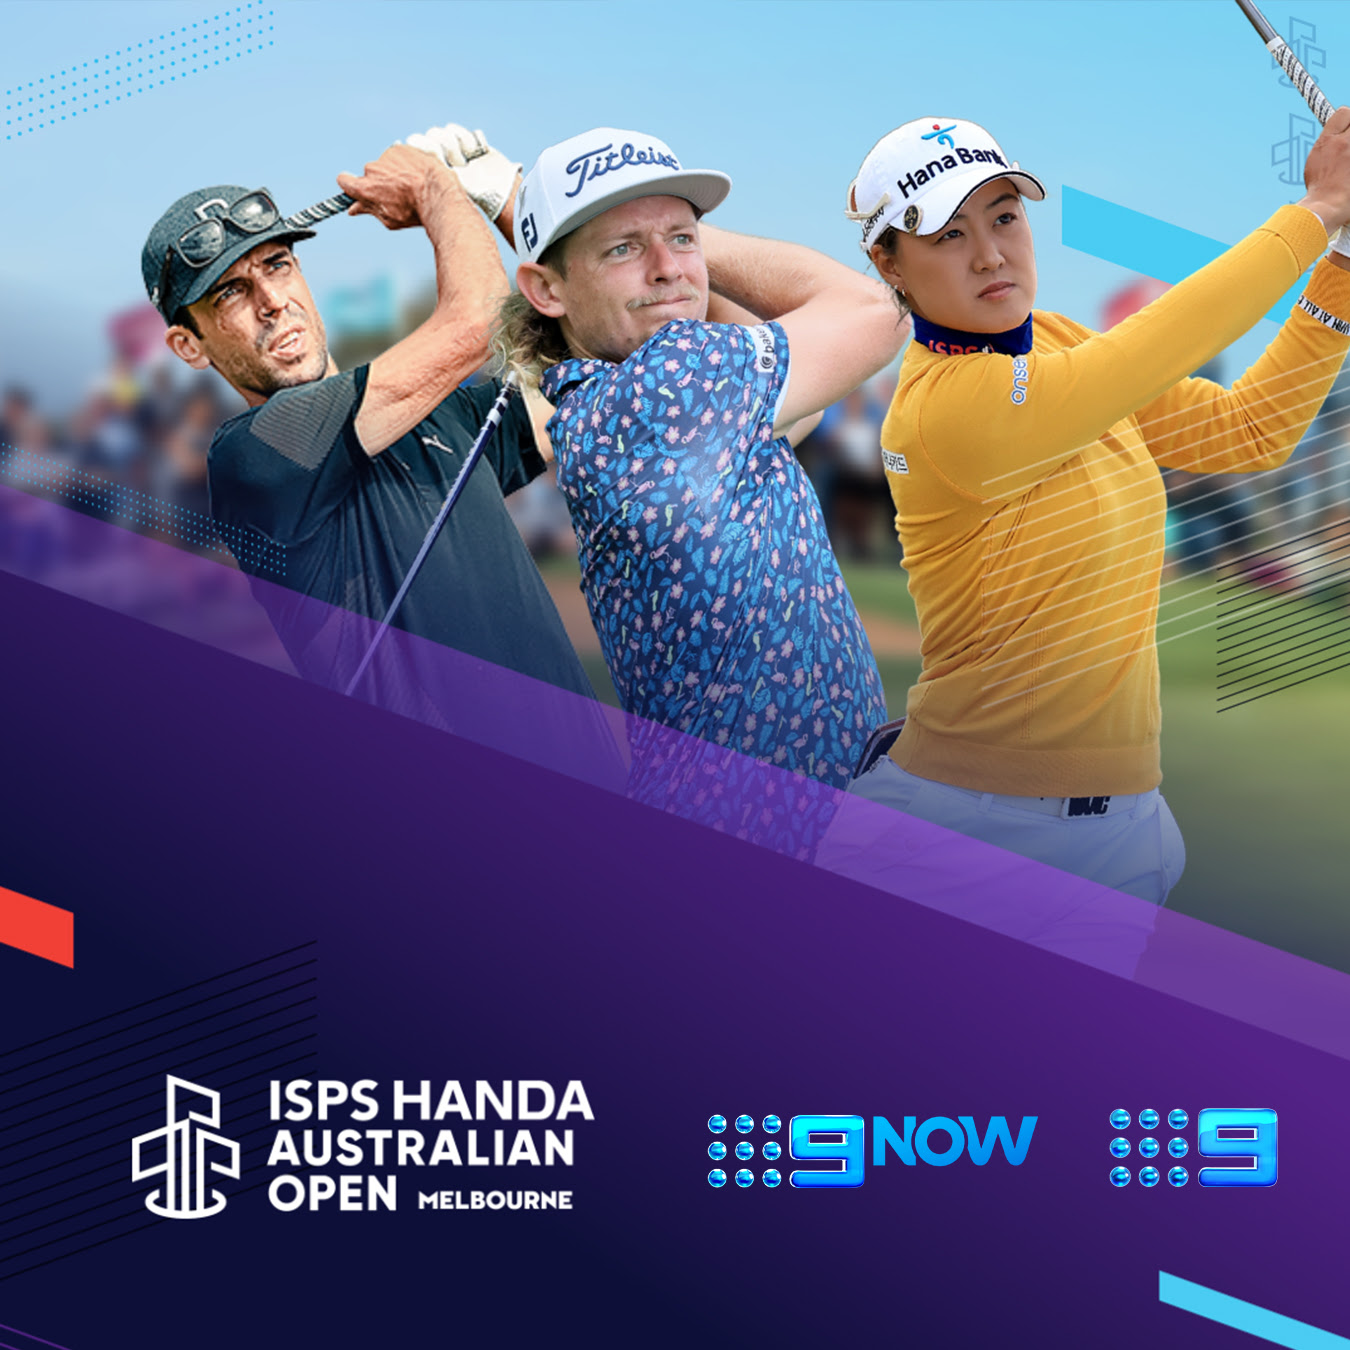 Australian Open golf this week on Nine Nine for Brands